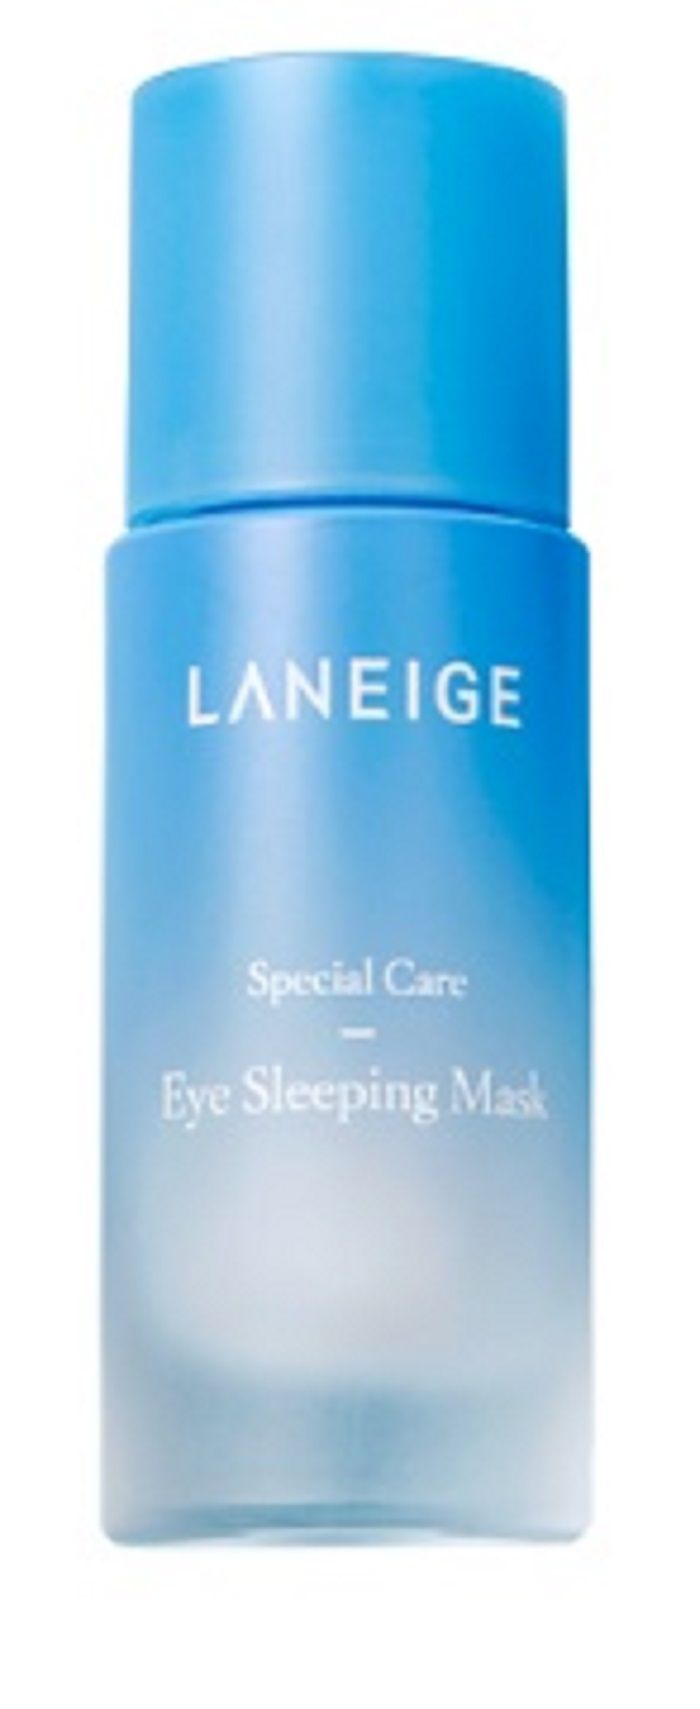 Laneige Eye Sleeping Mask